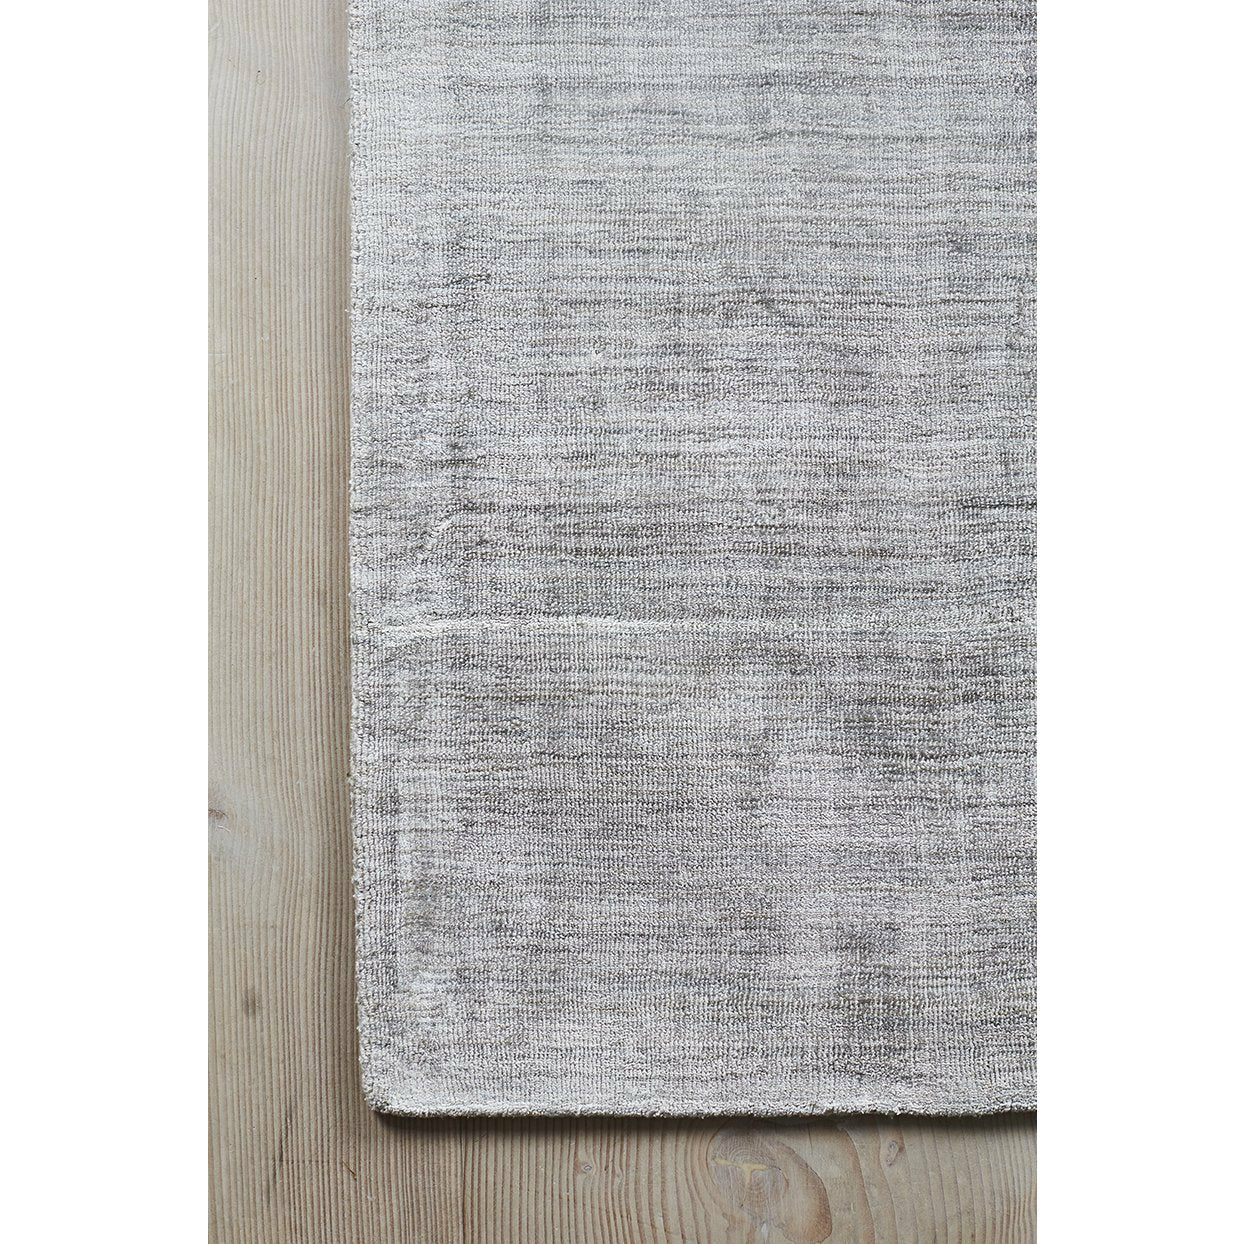 Massimo karma dywan jasnoszary, 250x350 cm